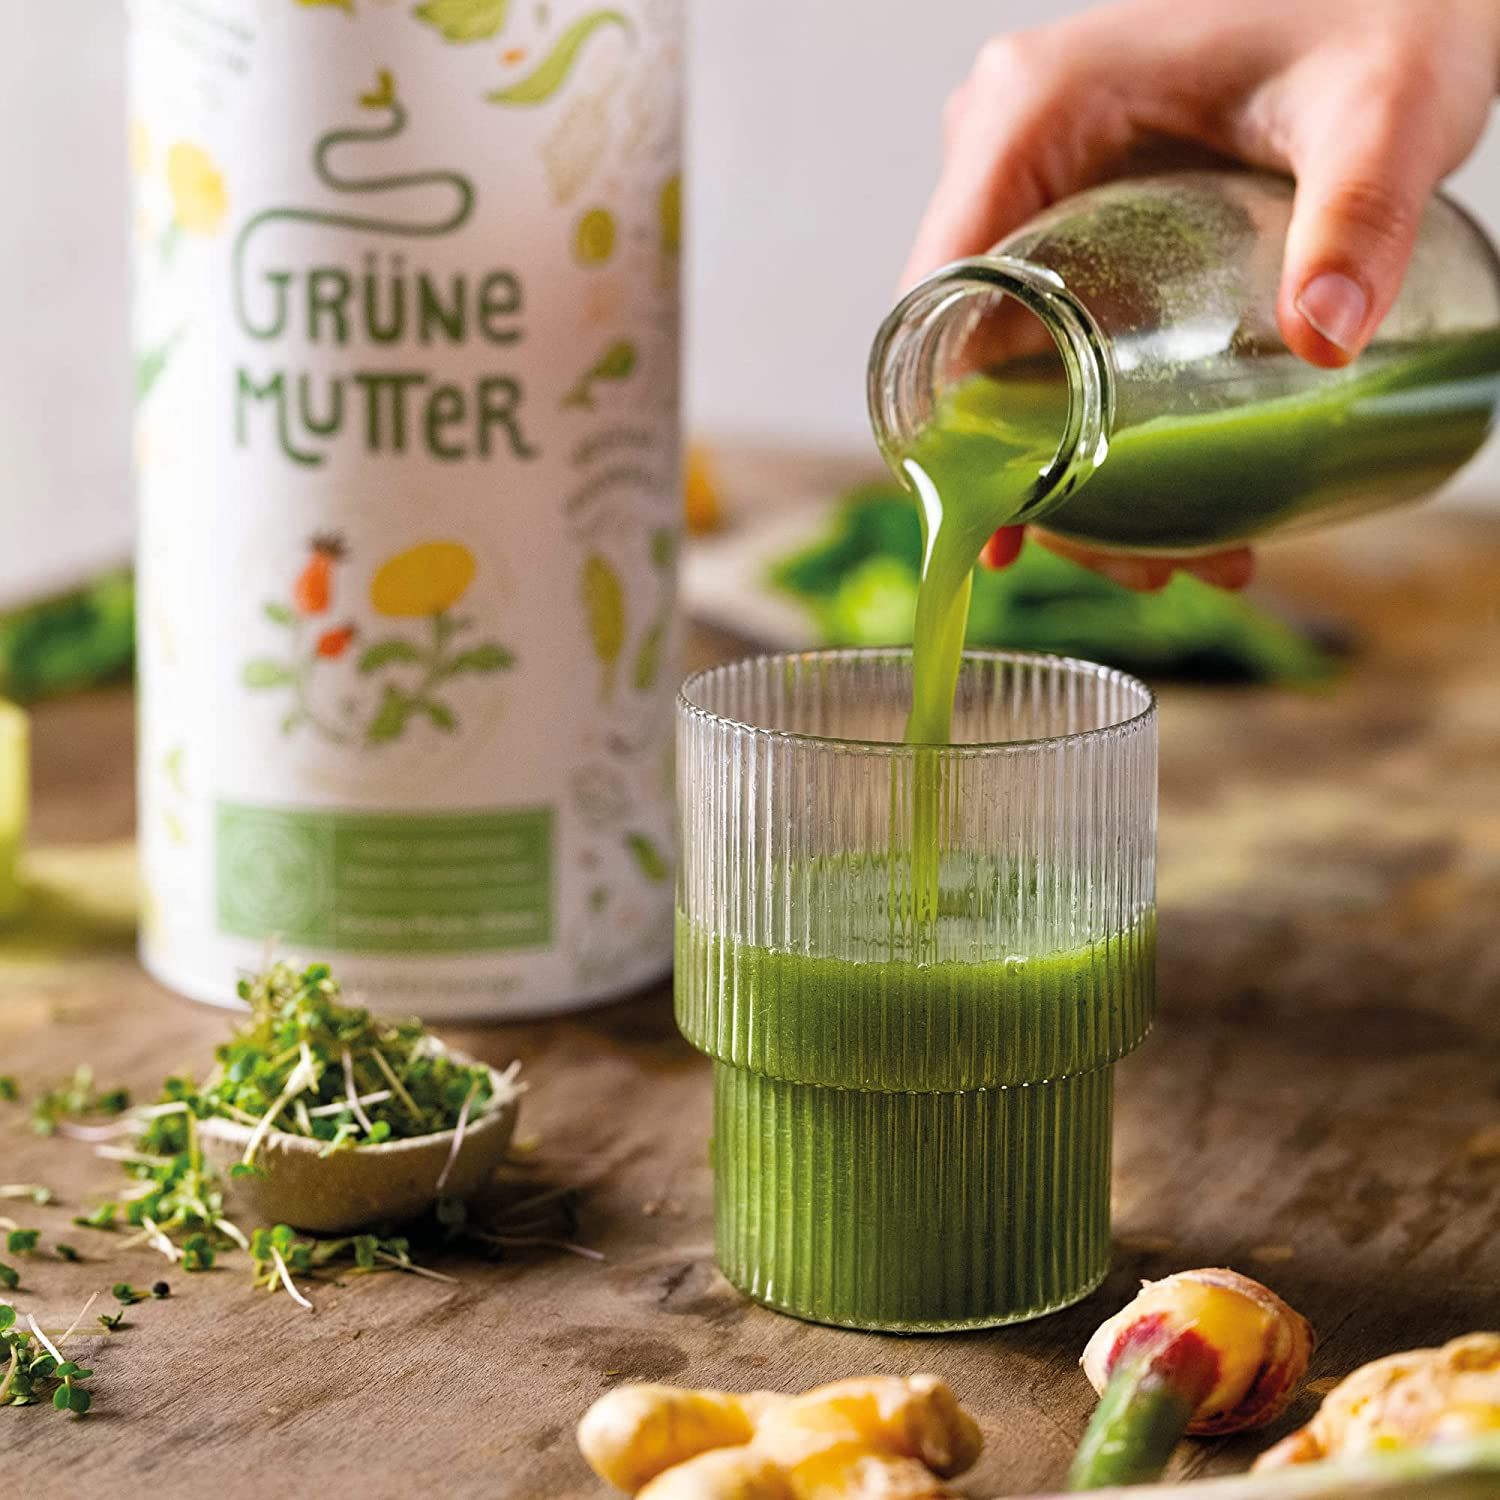 Grüne Mutter - Smoothie Pulver - Das Original Superfood Elixier